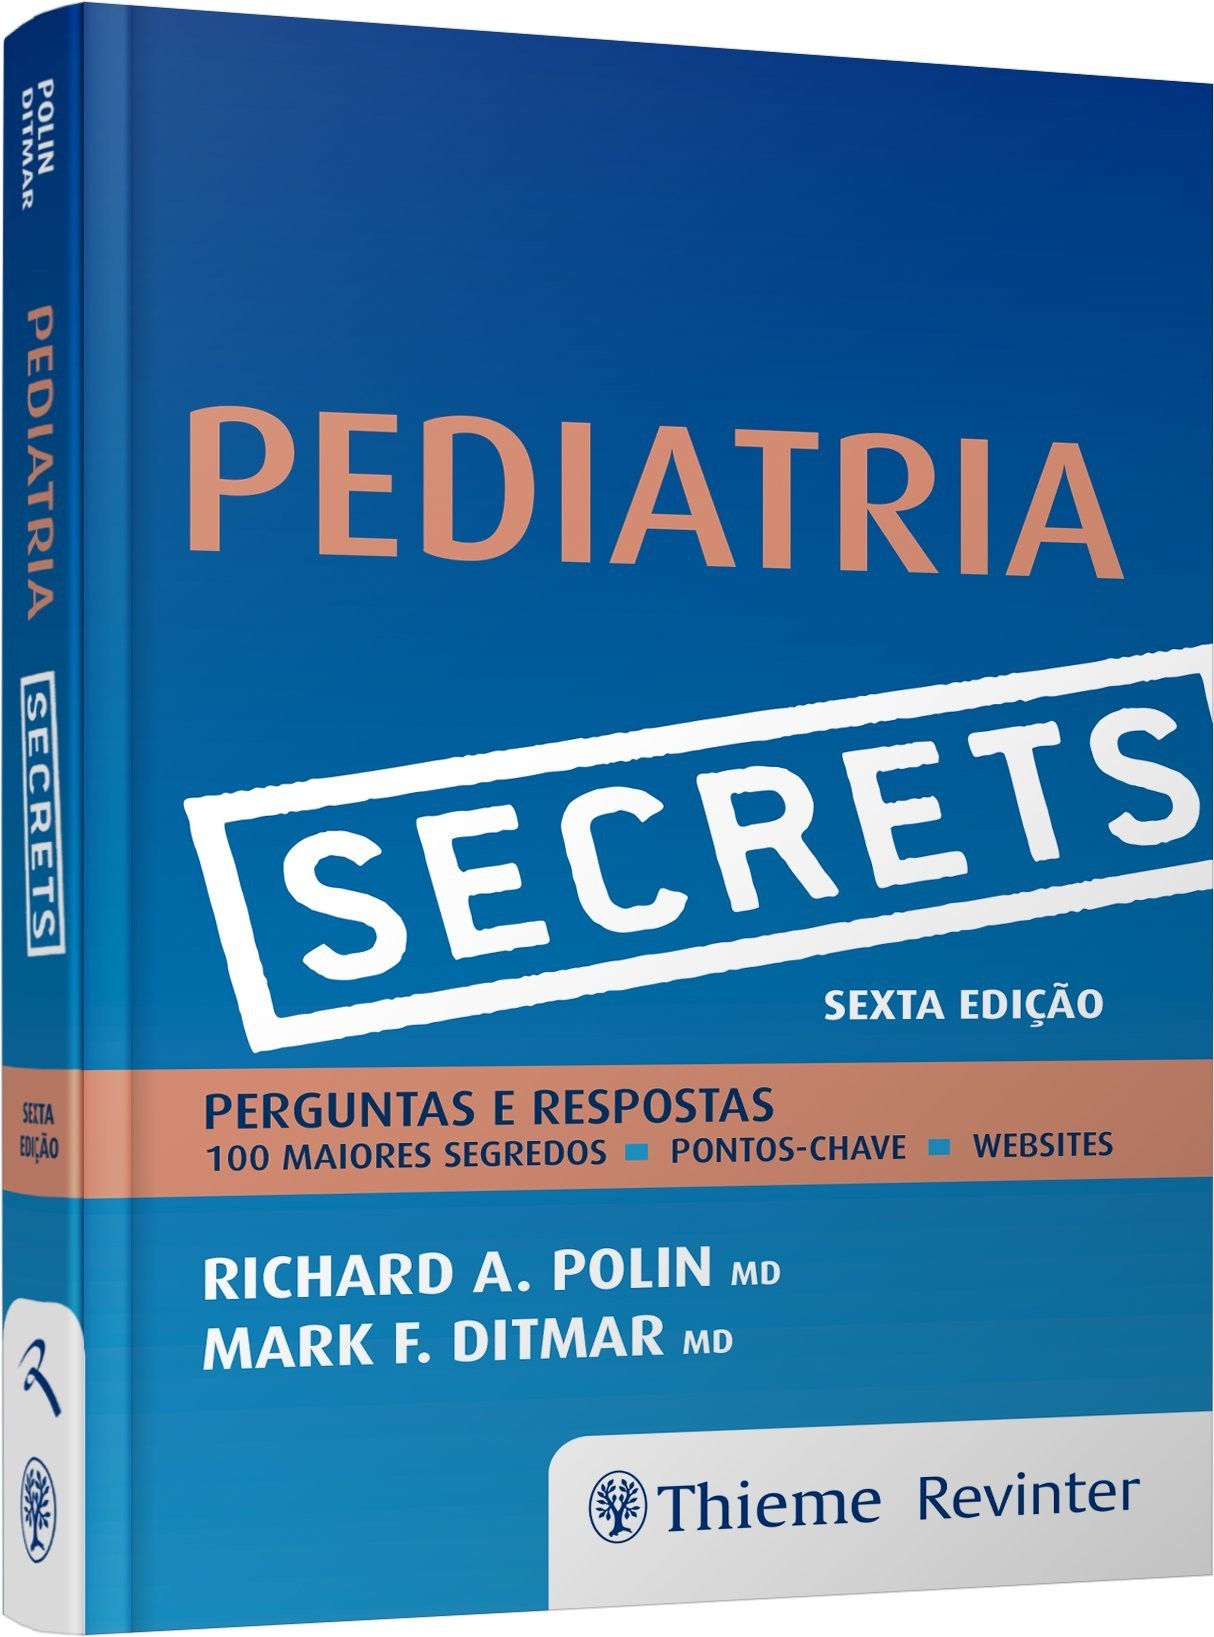 Secrets - Pediatria - Perguntas E Respostas